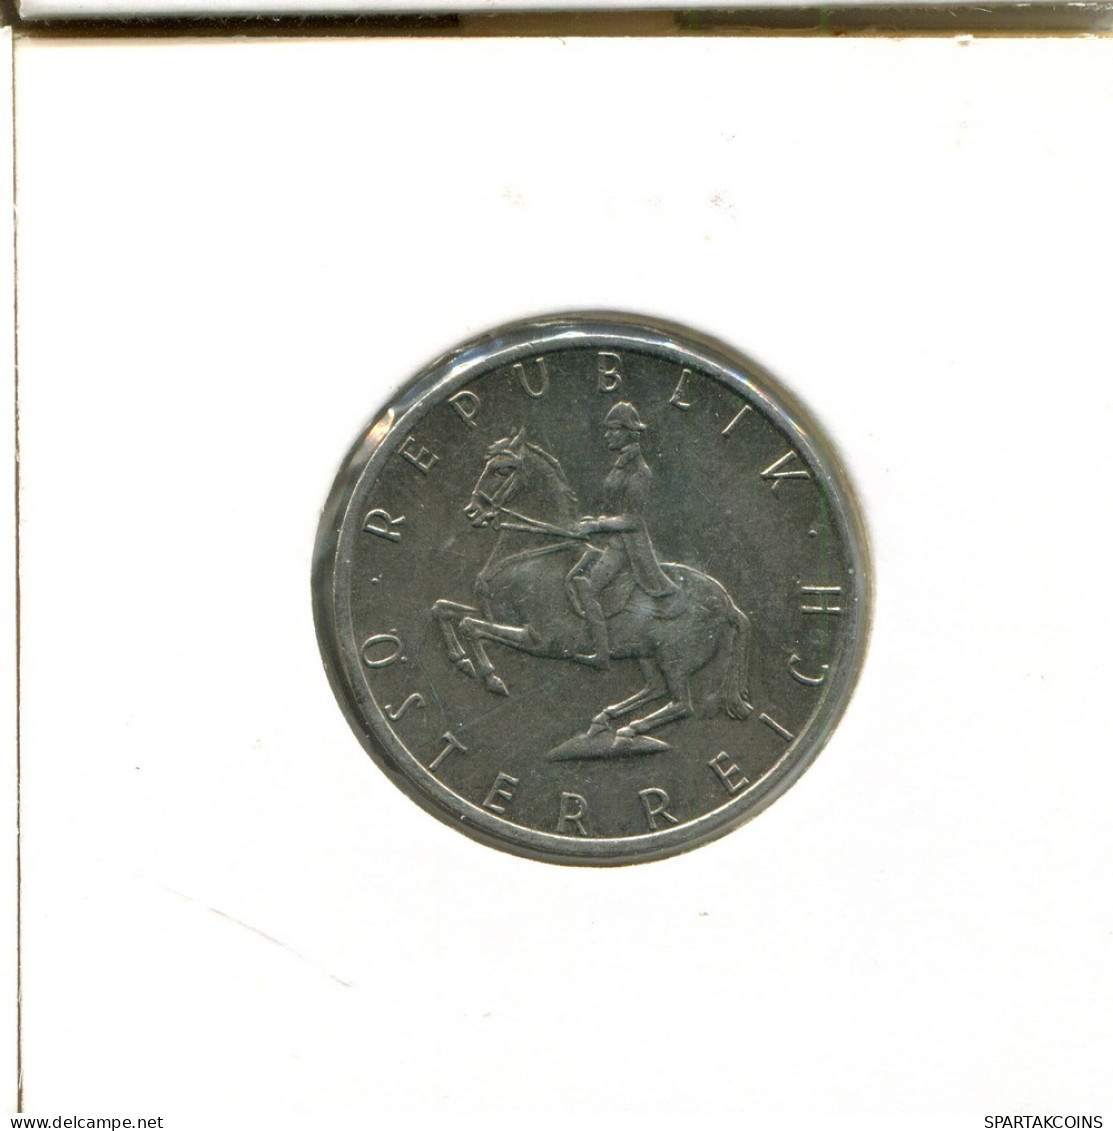 5 SCHILLING 1986 AUSTRIA Coin #AT672.U.A - Oostenrijk